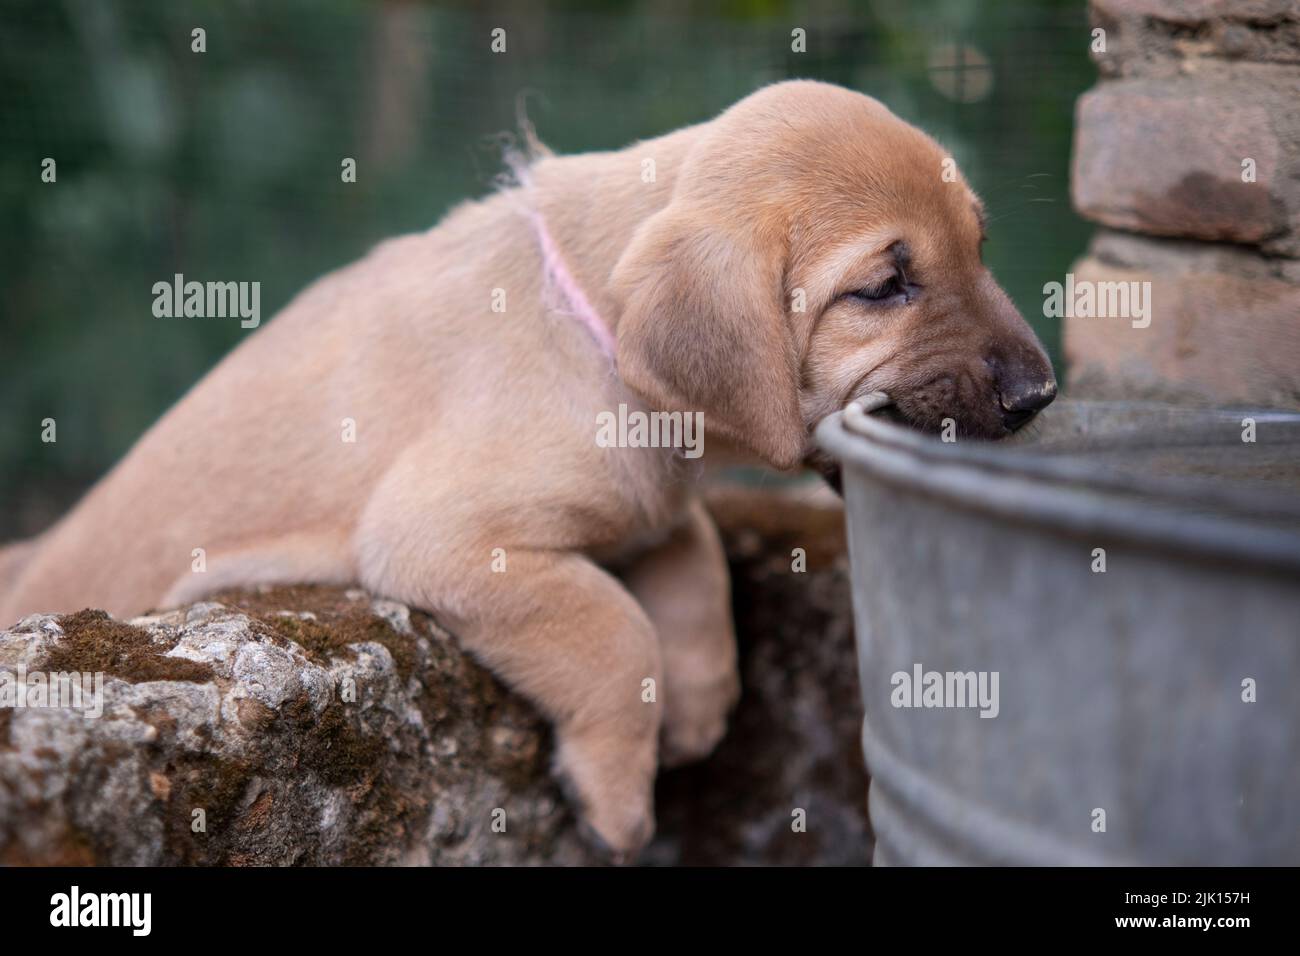 Broholmer cachorro con un collar rosa jugando y mordiendo en un cubo de acero, Italia, Europa Foto de stock